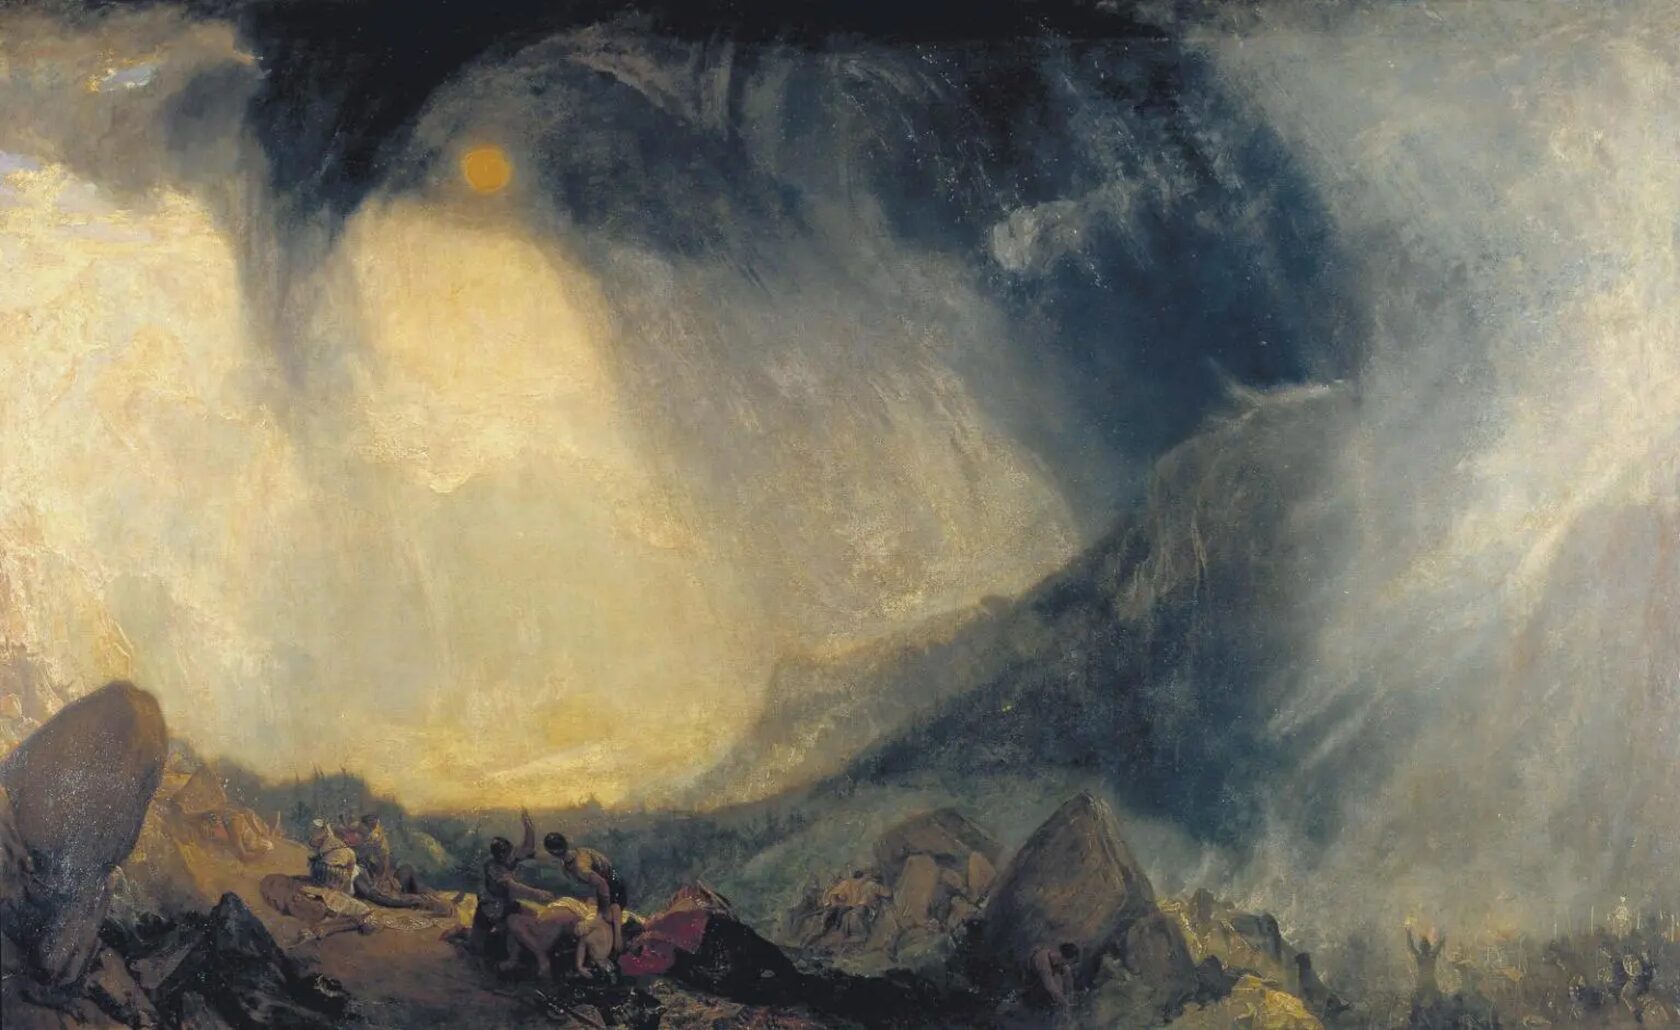 «Снежная буря: Ганнибал и его армия, пересекающая Альпы» - это картина Дж. М. У. Тернера, написанная маслом на холсте, впервые выставленная в 1812 году. Оставленная нации по завещанию Тернера, она была приобретена Национальной галереей в Лондоне в 1856 году и сейчас хранится. галереей Тейт.